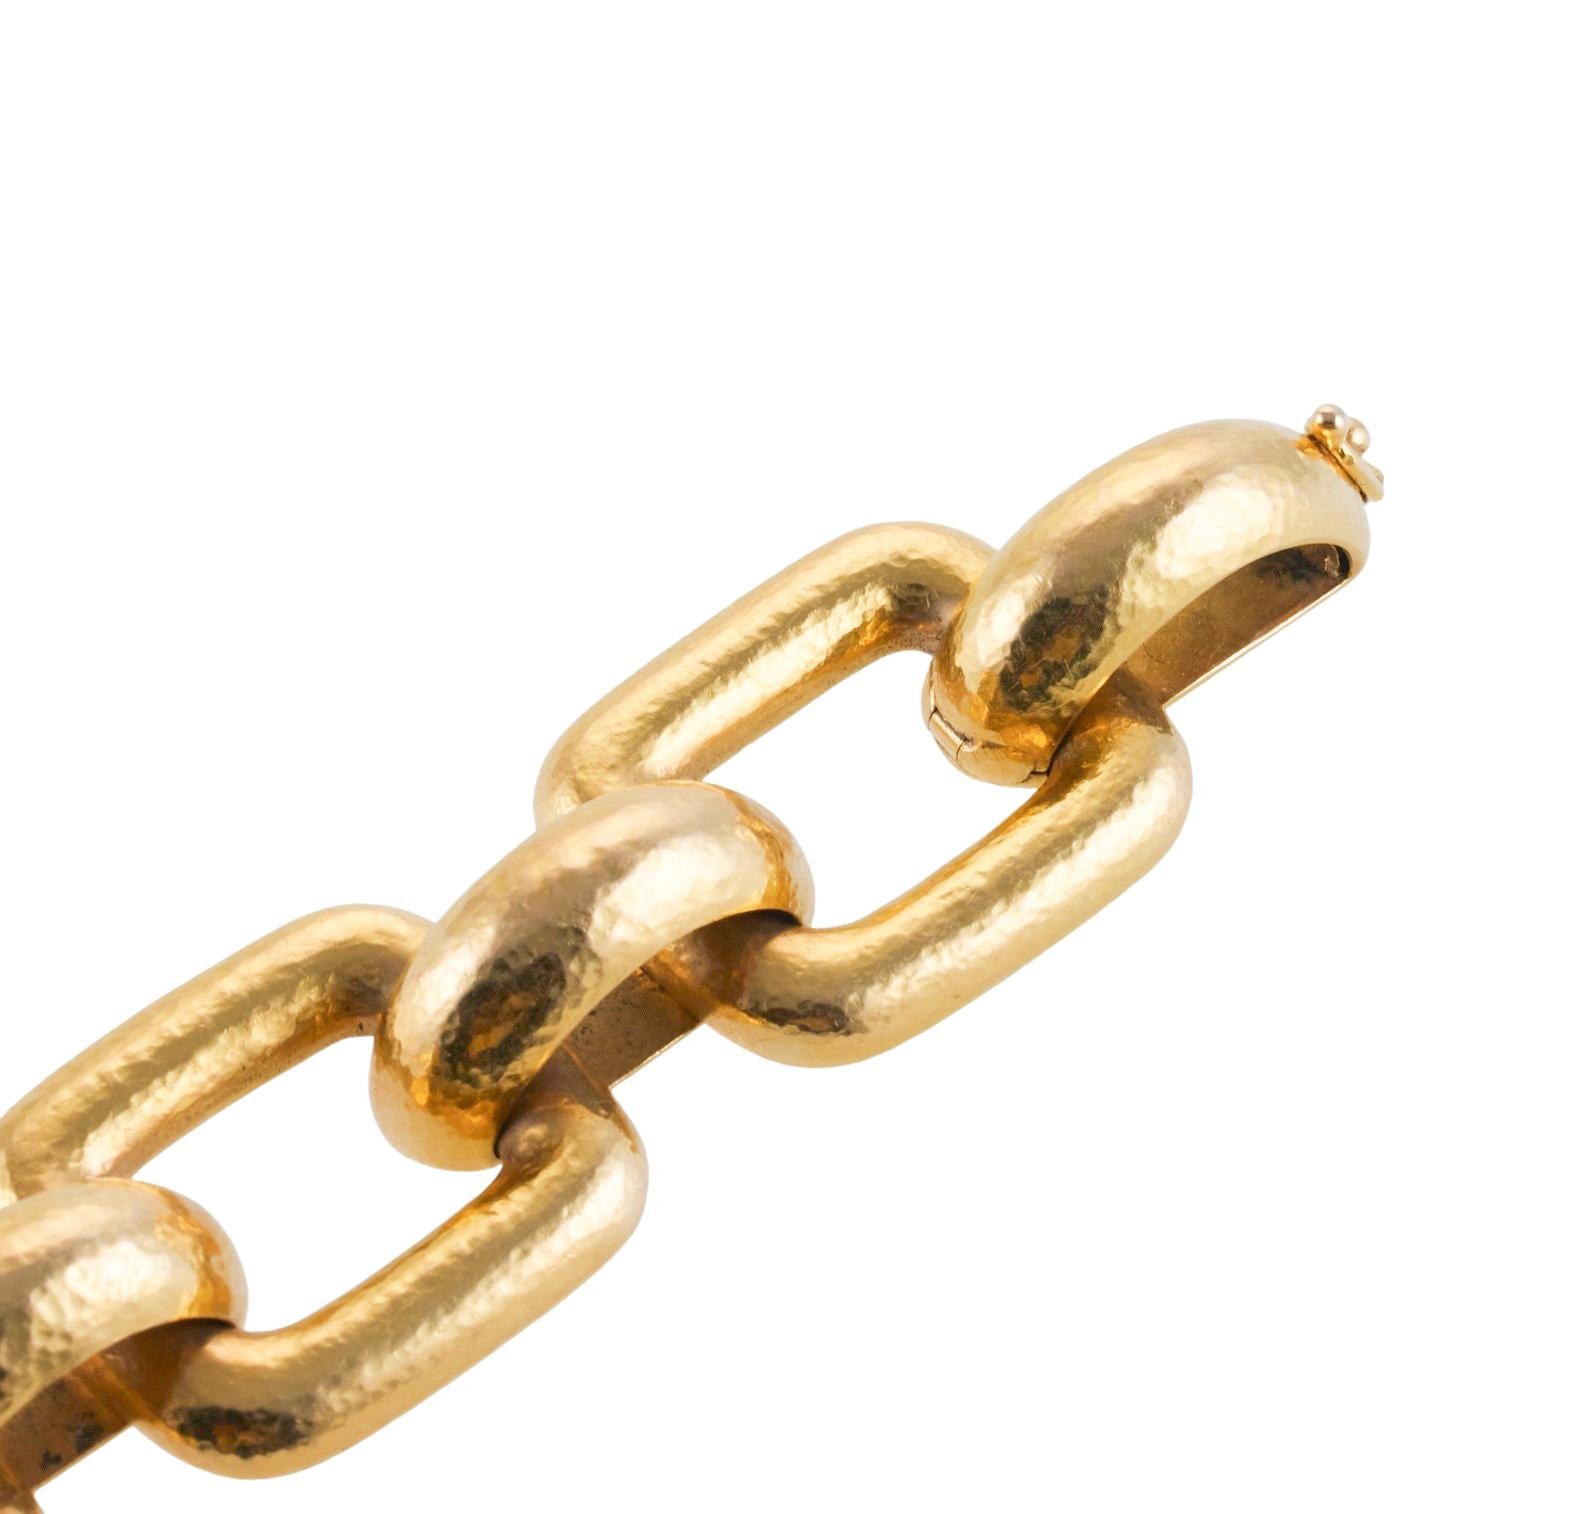 19K yellow gold hammered link beacelet by Elizabeth Locke. Bracelet measures 8